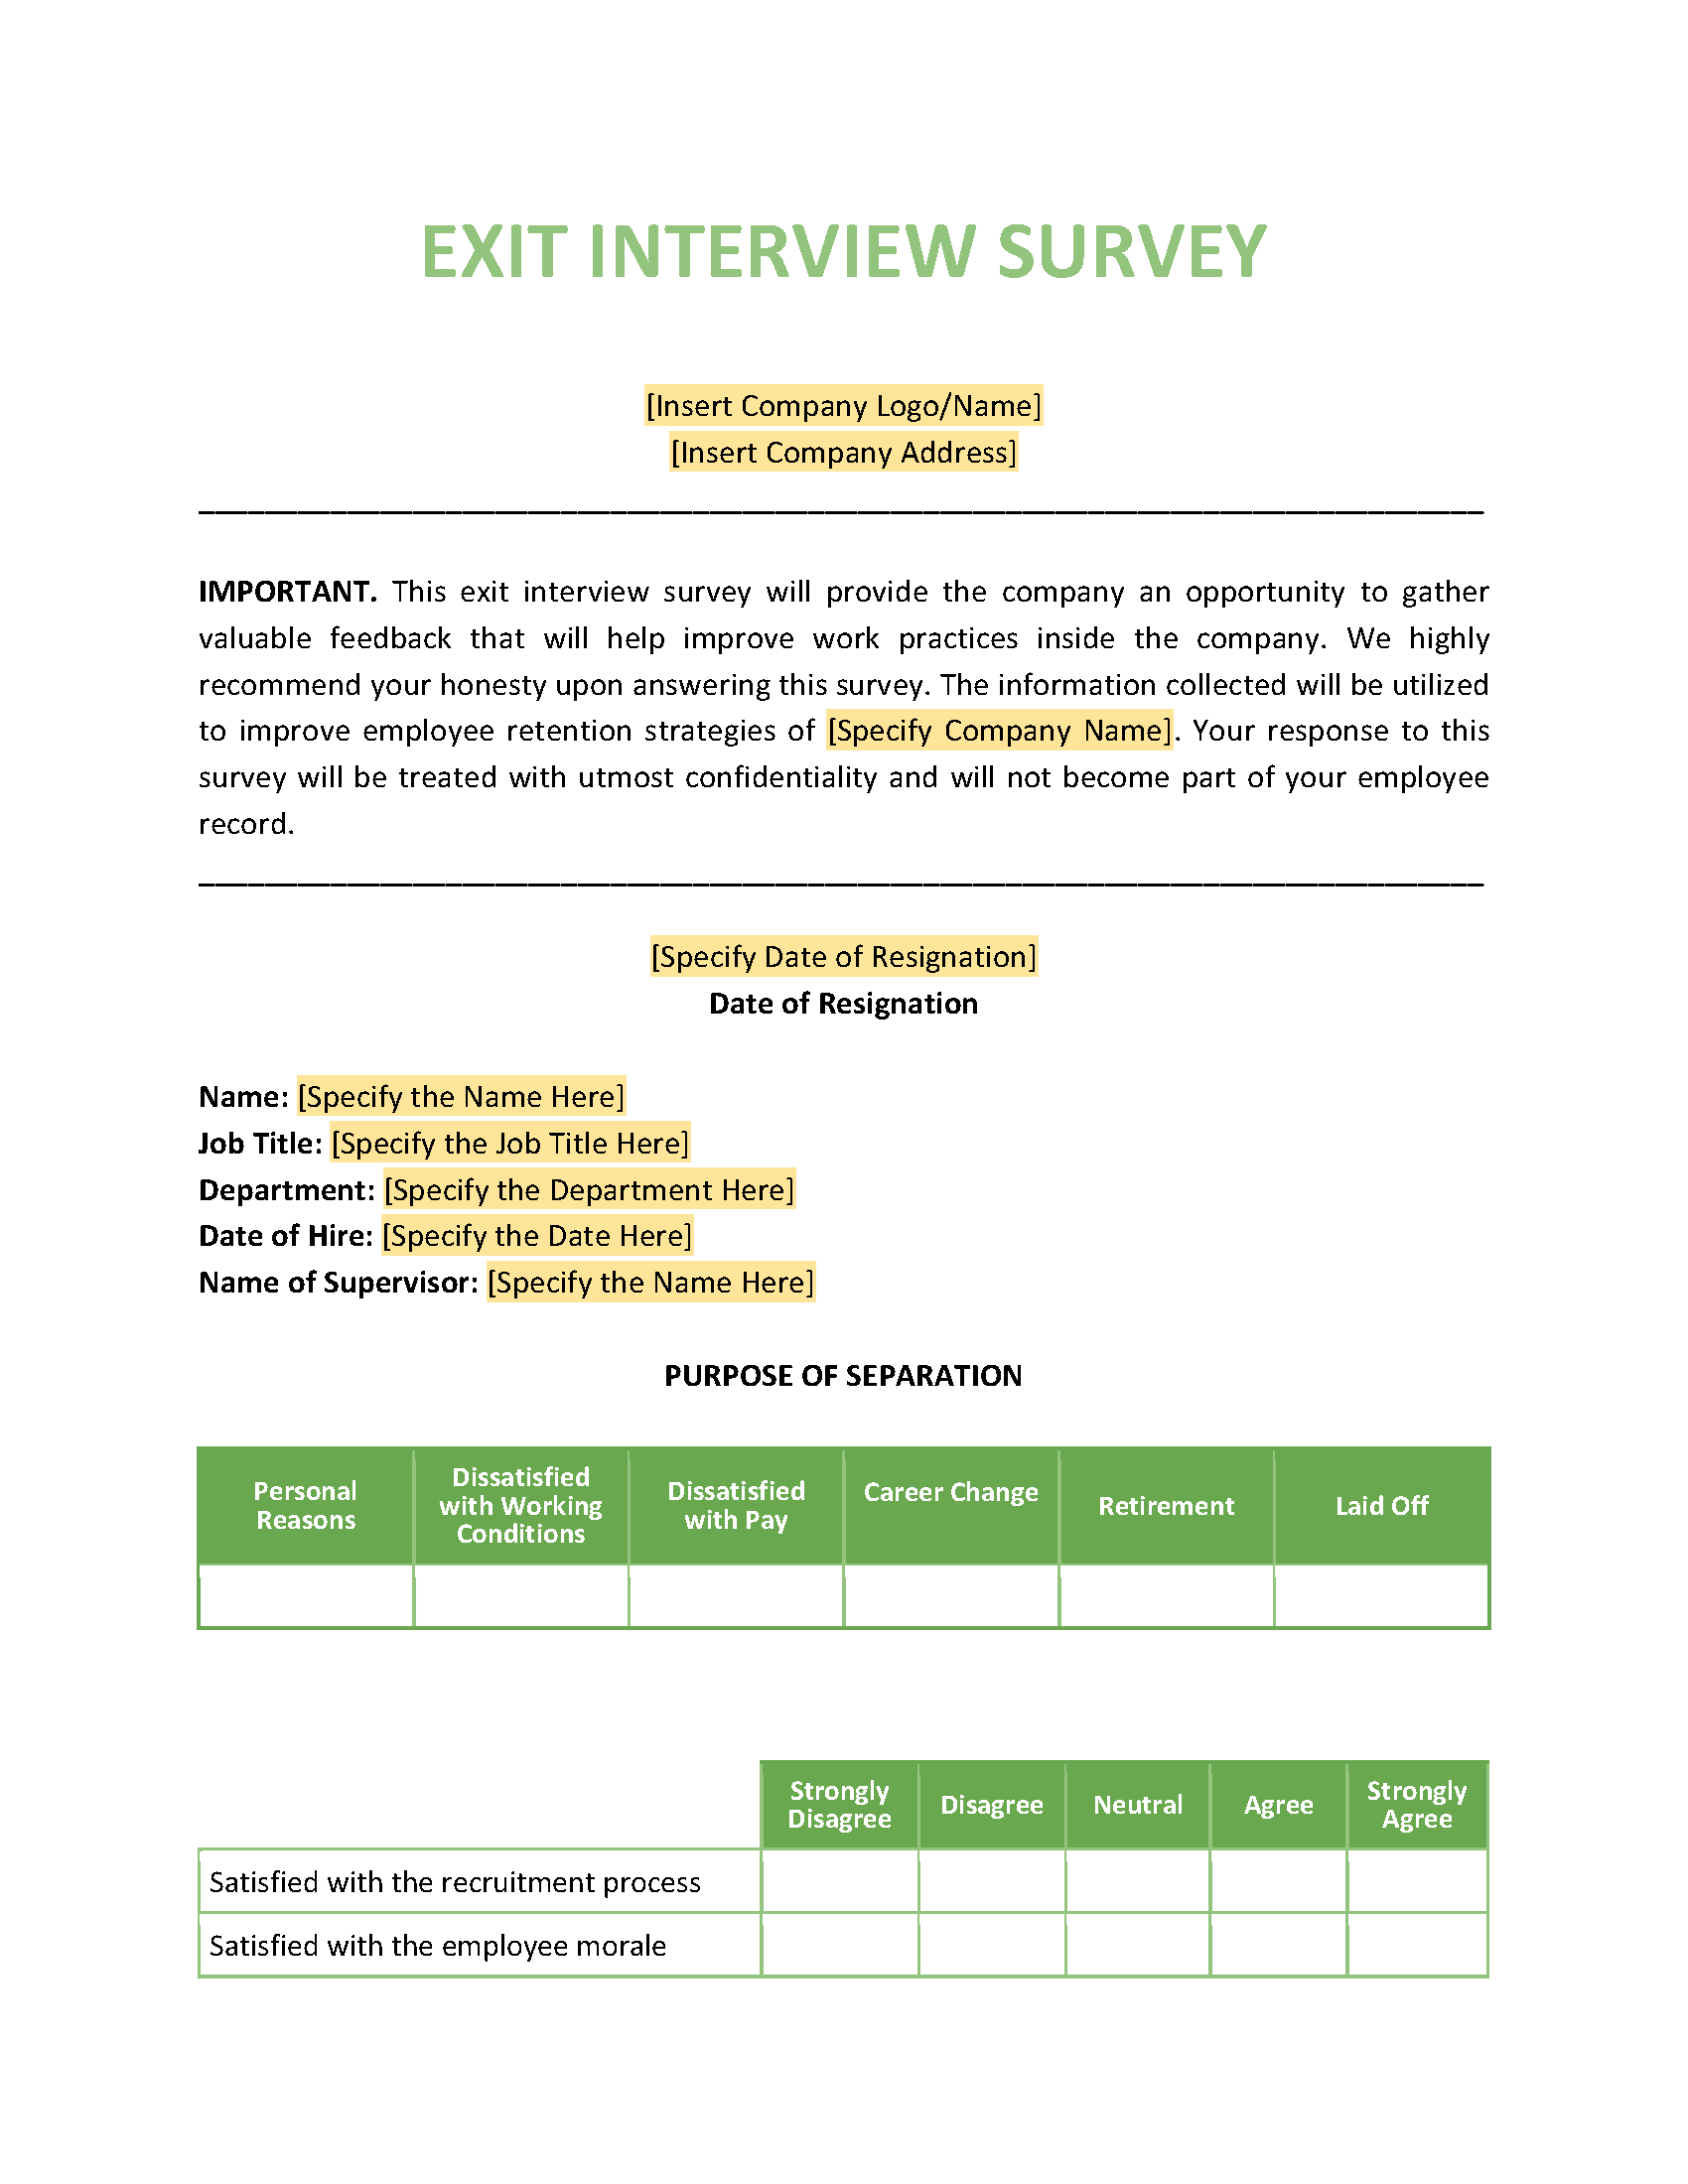 Exit Interview Survey Template